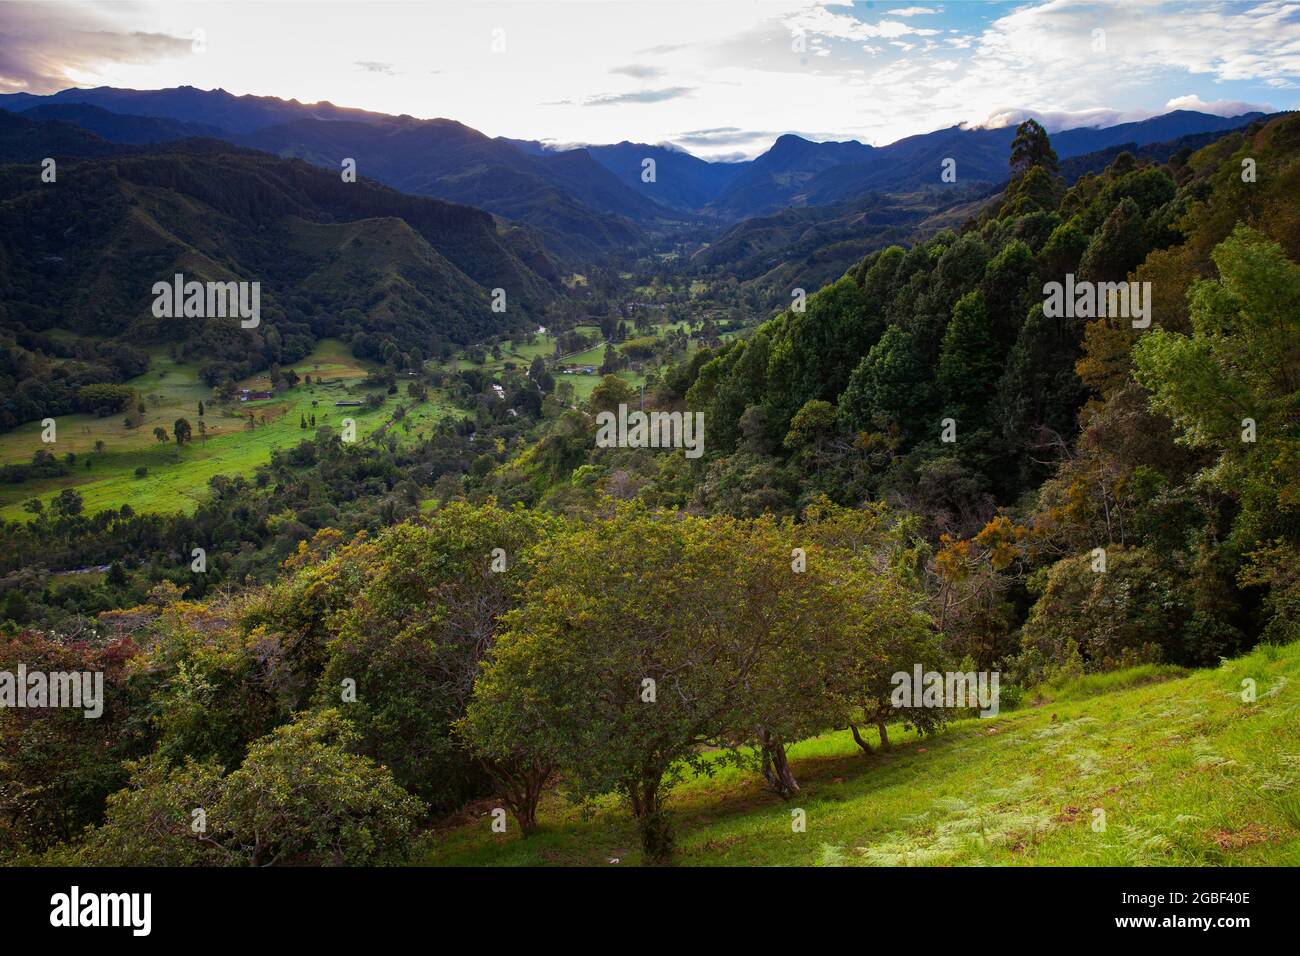 Belle vue panoramique sur la vallée de Cocora dans la région de Quindio en Colombie Banque D'Images